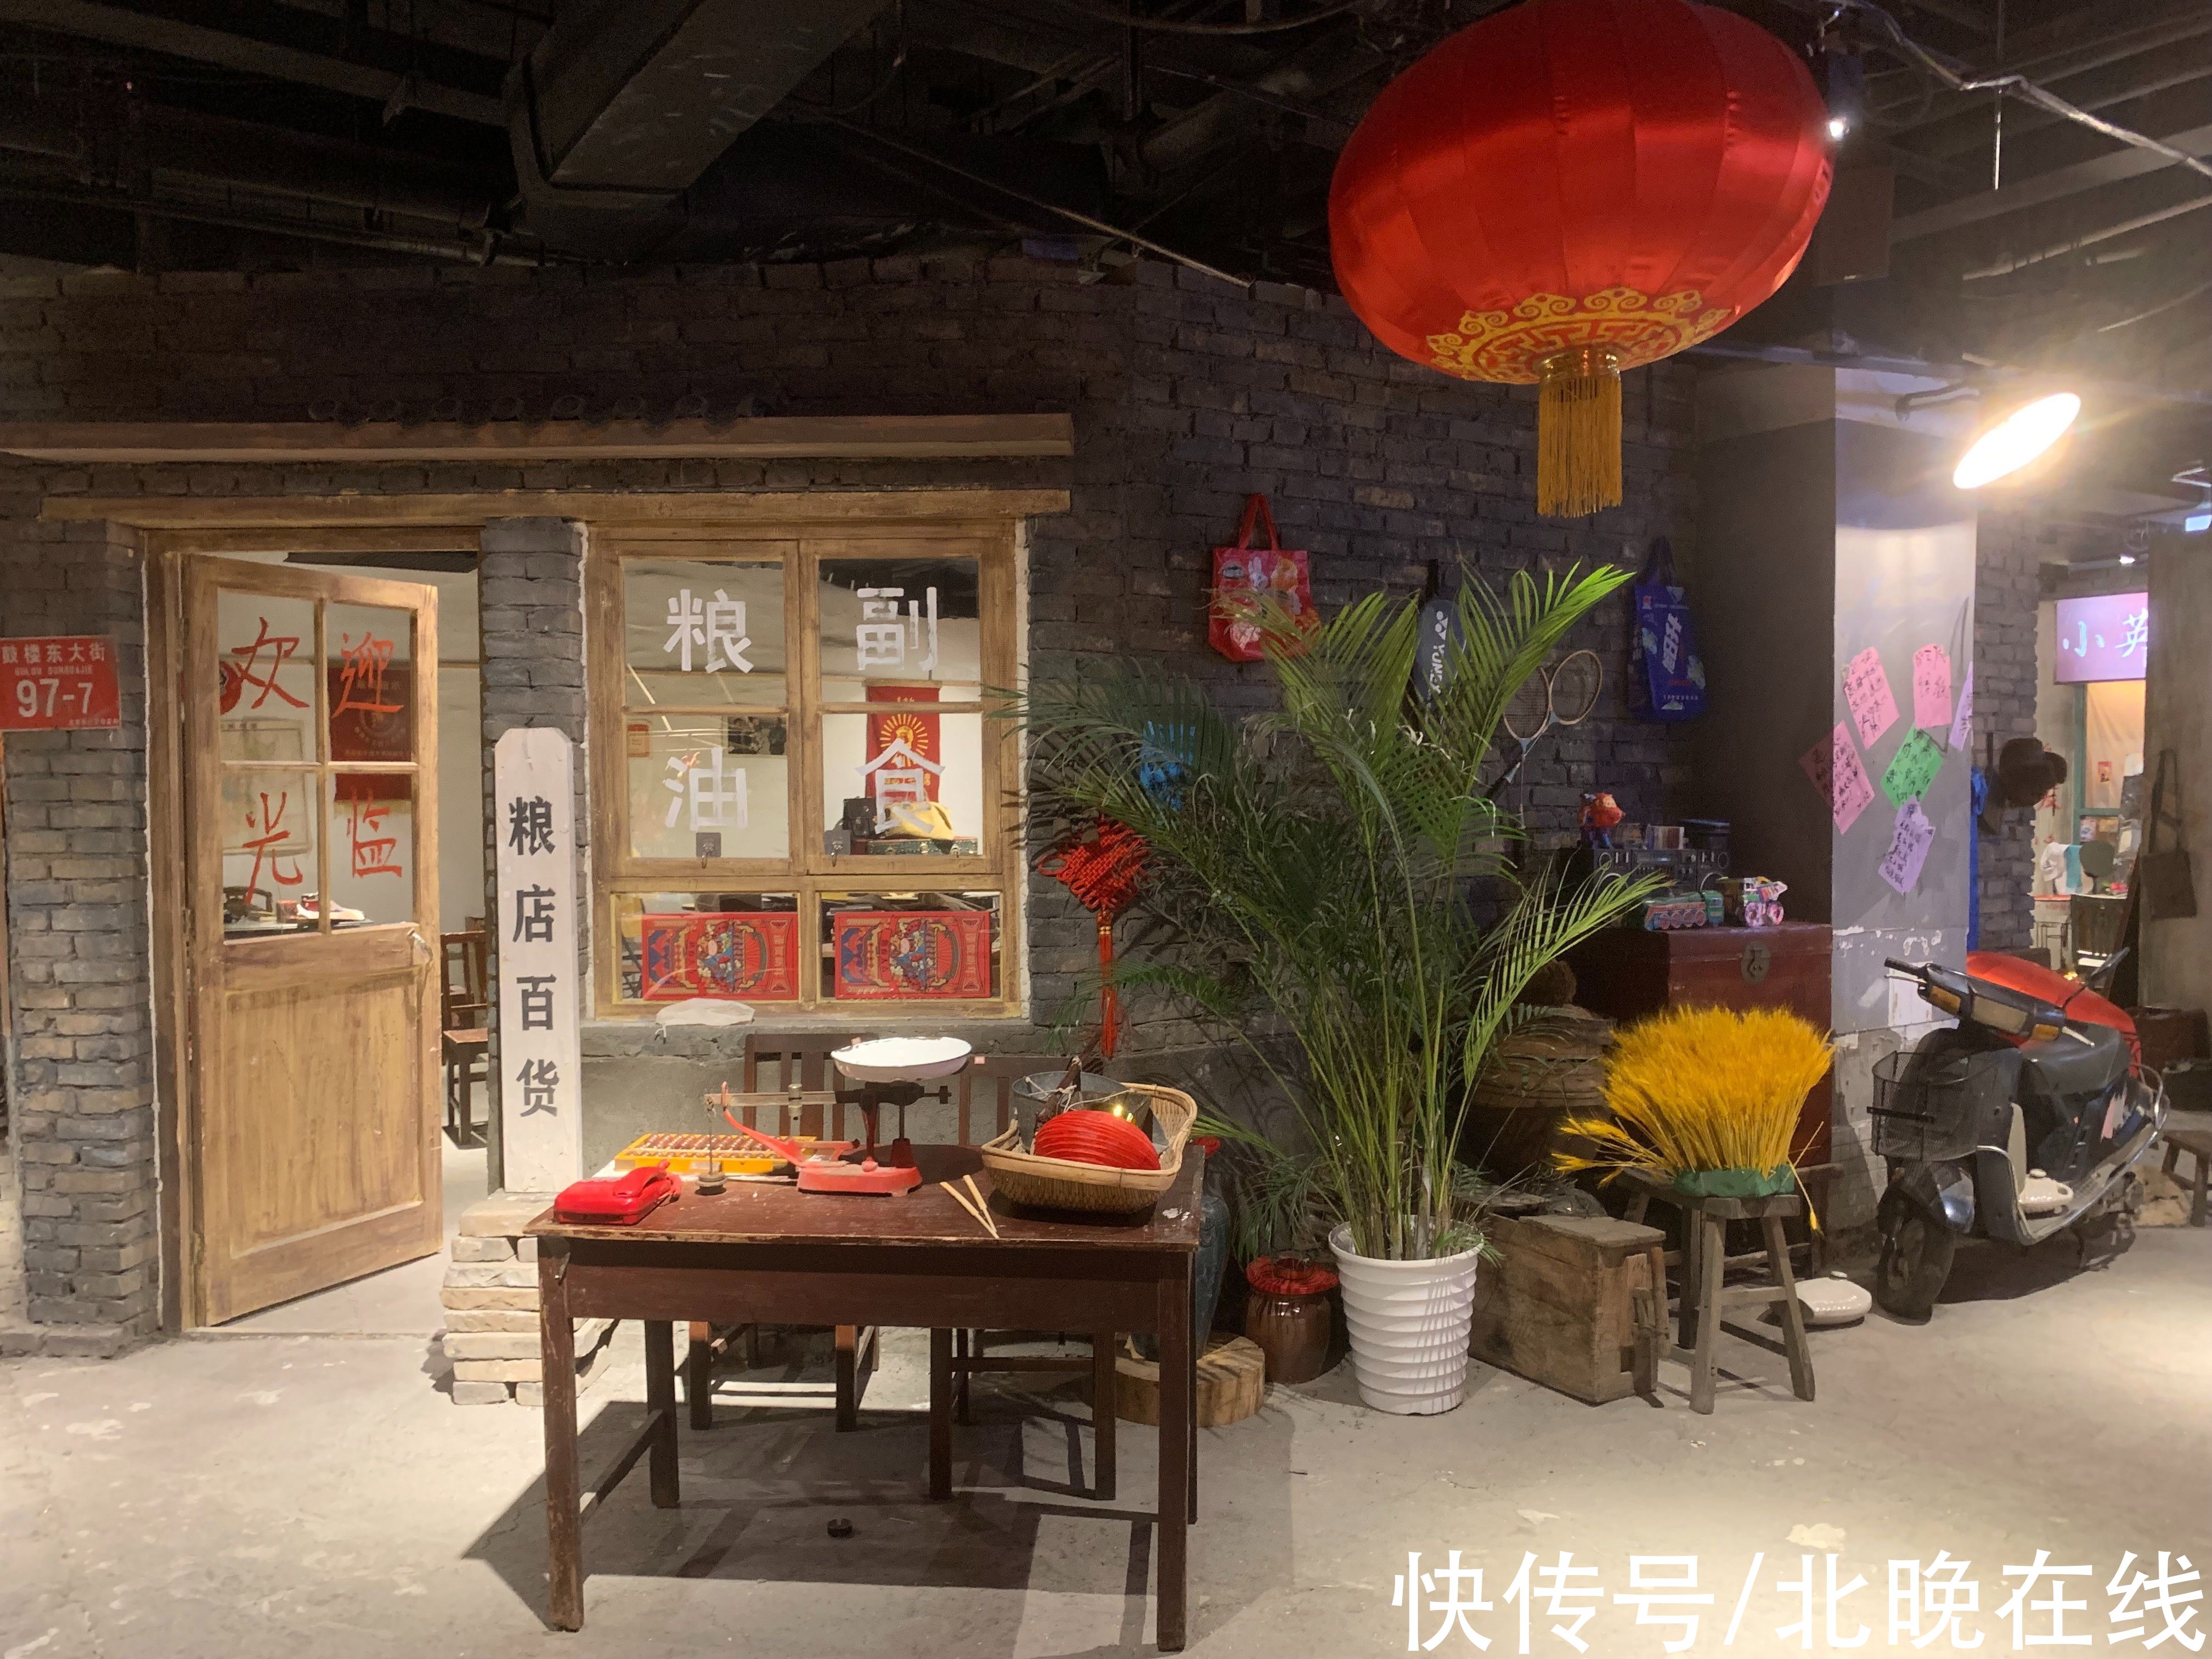 老物件|副食商店、修鞋摊、录像厅……老北京街区景观引市民沉浸式体验